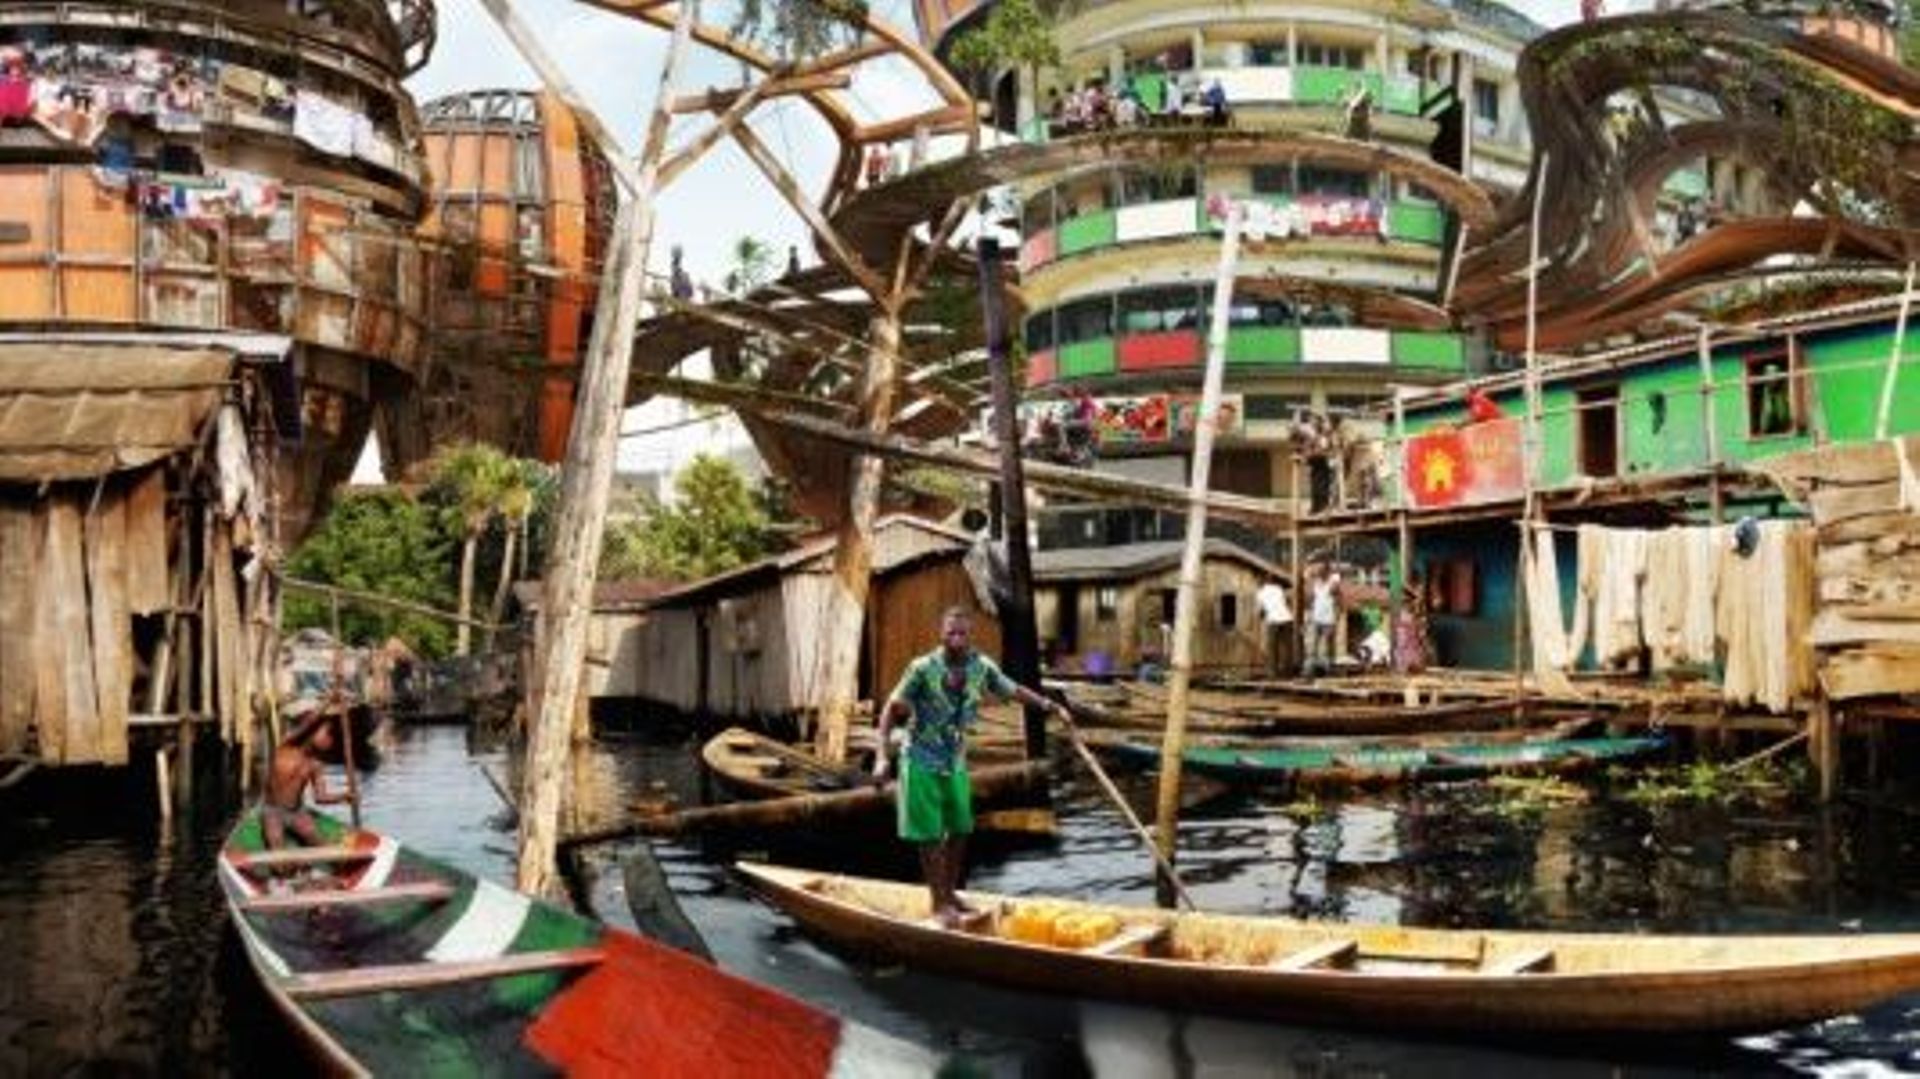 Olalekan Jeyifous a imaginé ce à quoi ressemblerait Lagos en 2050 dans sa série "Shanty Megastructures" ("mégastructures de bidonvilles improvisées", en français).